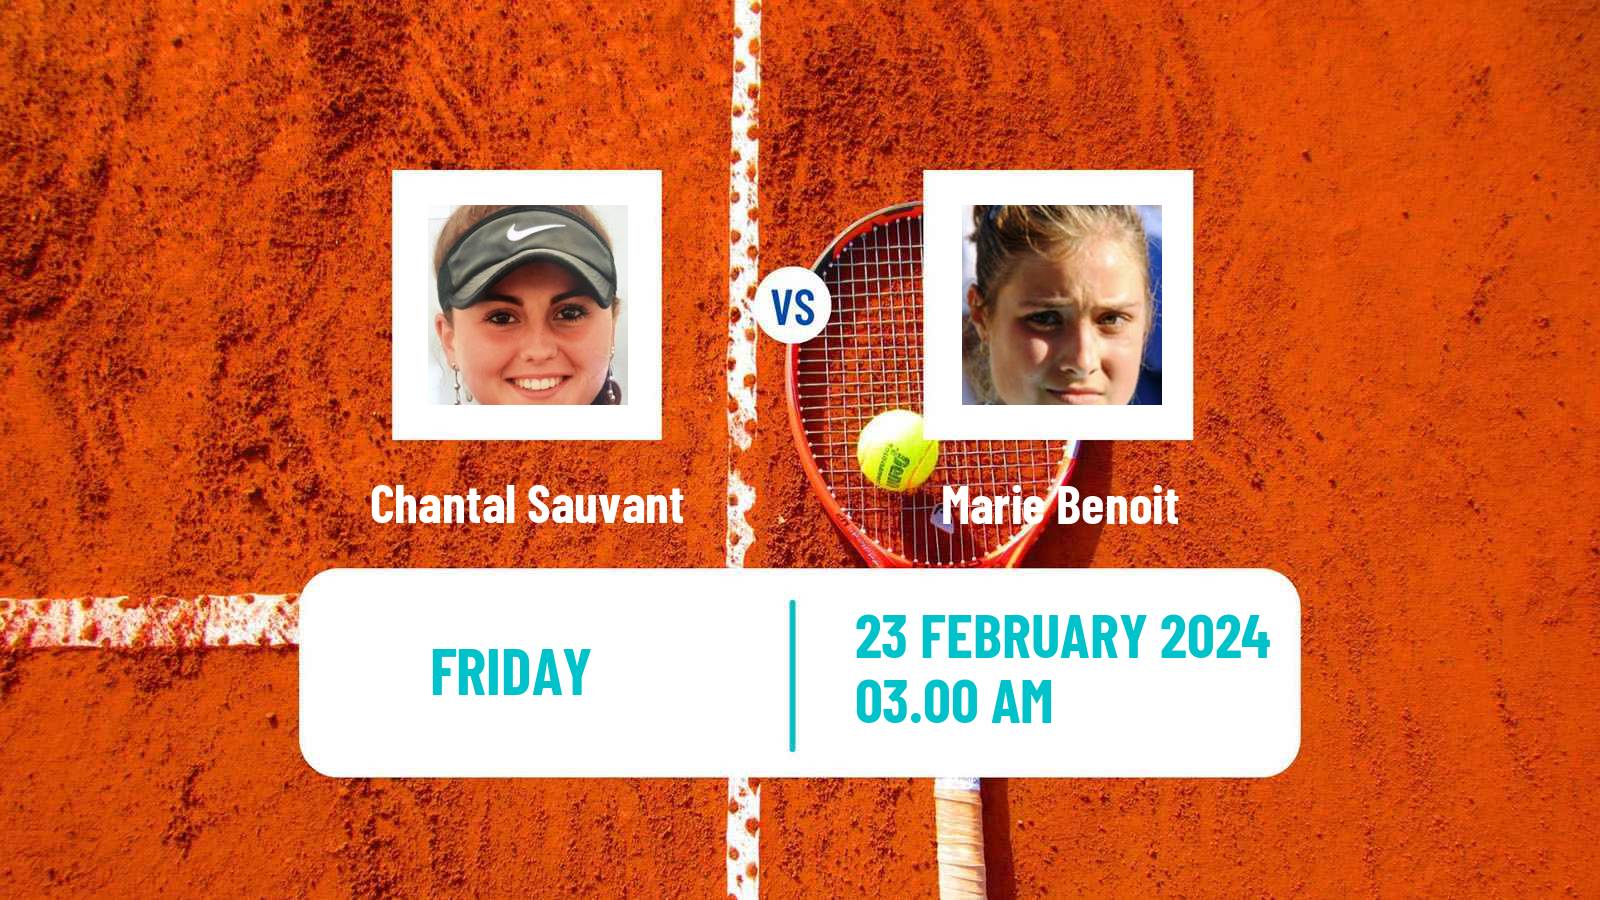 Tennis ITF W35 Hammamet 2 Women Chantal Sauvant - Marie Benoit